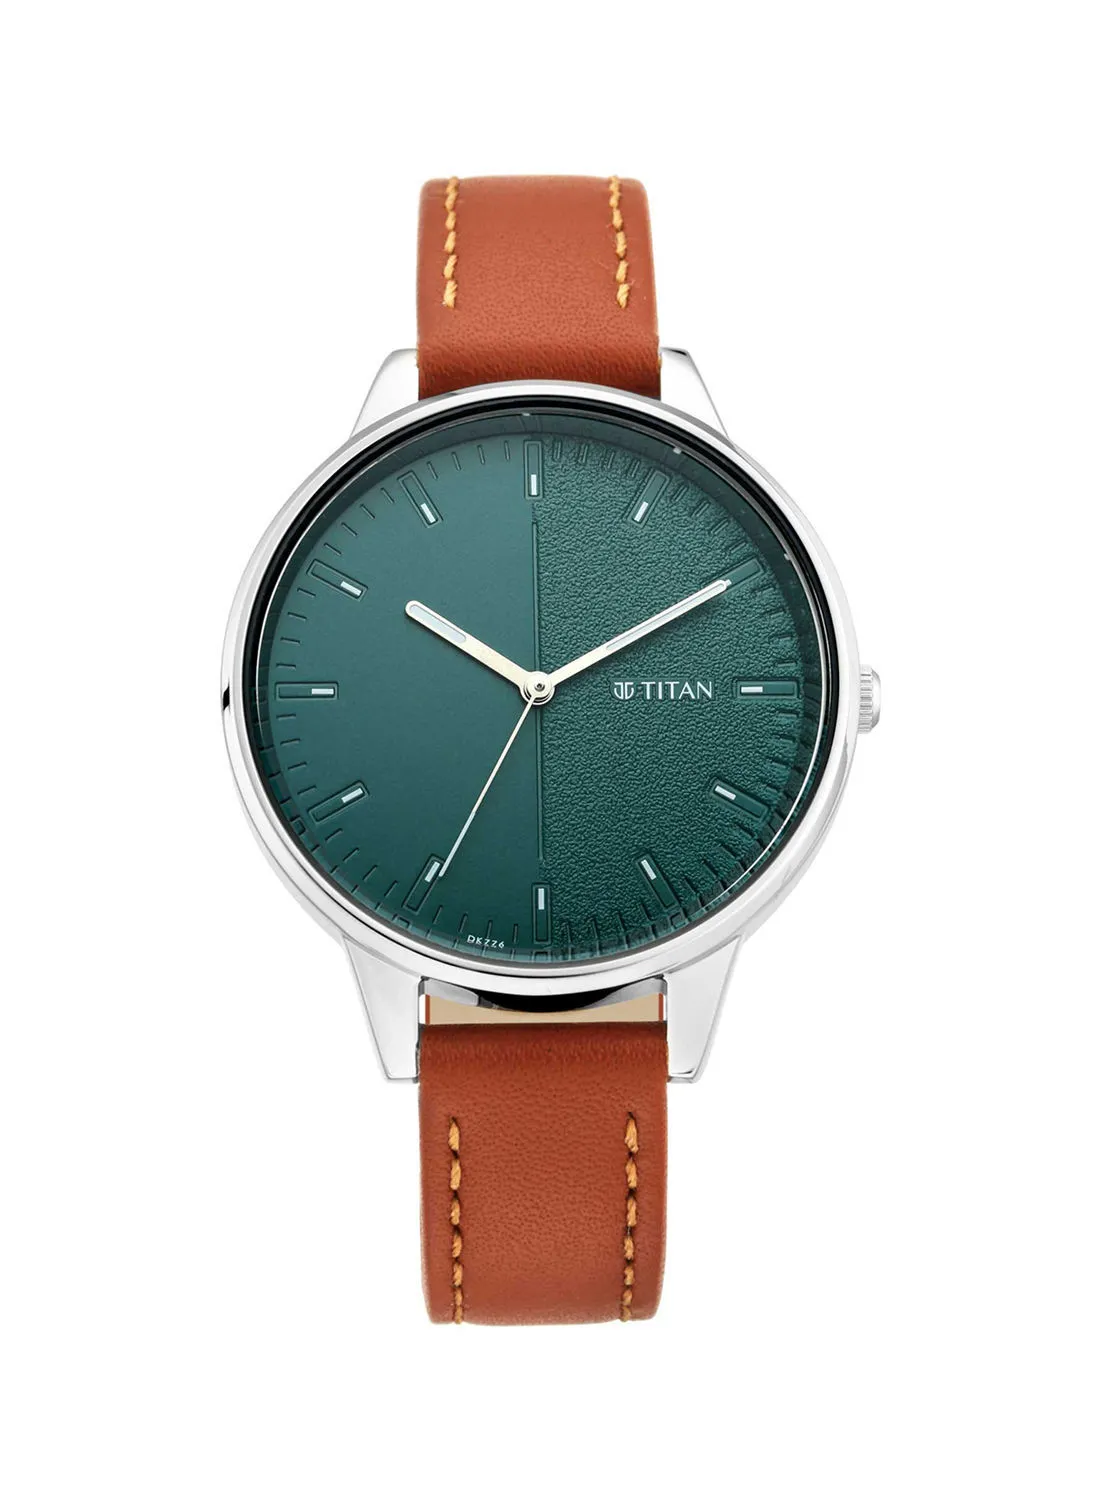 TITAN Leather Analog Wrist Watch 2648SL01